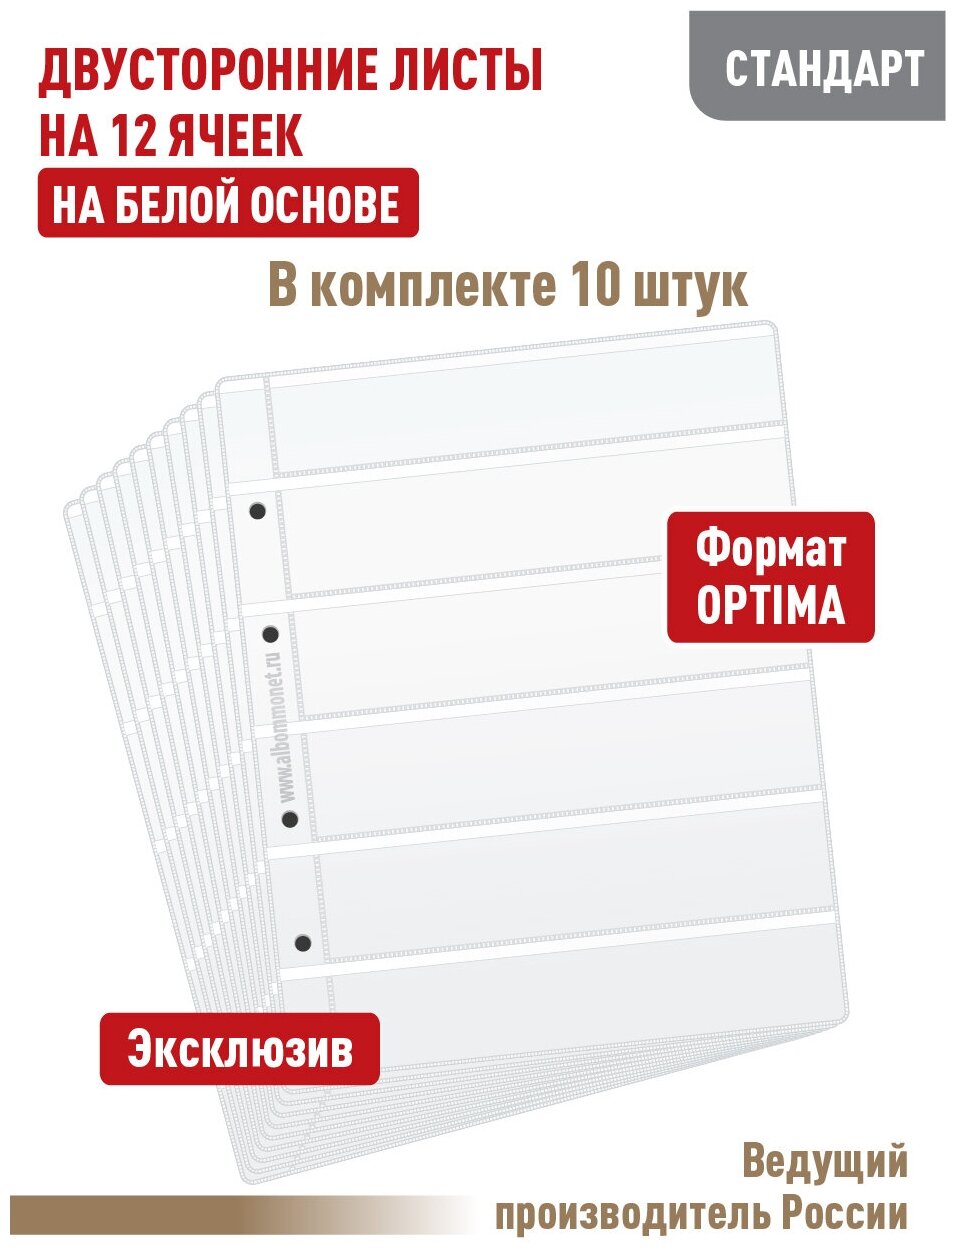 Комплект из 10 листов "стандарт" на белой основе (двусторонний) для марок на 12 полос. Формат "Optima". Размер 200х250 мм.